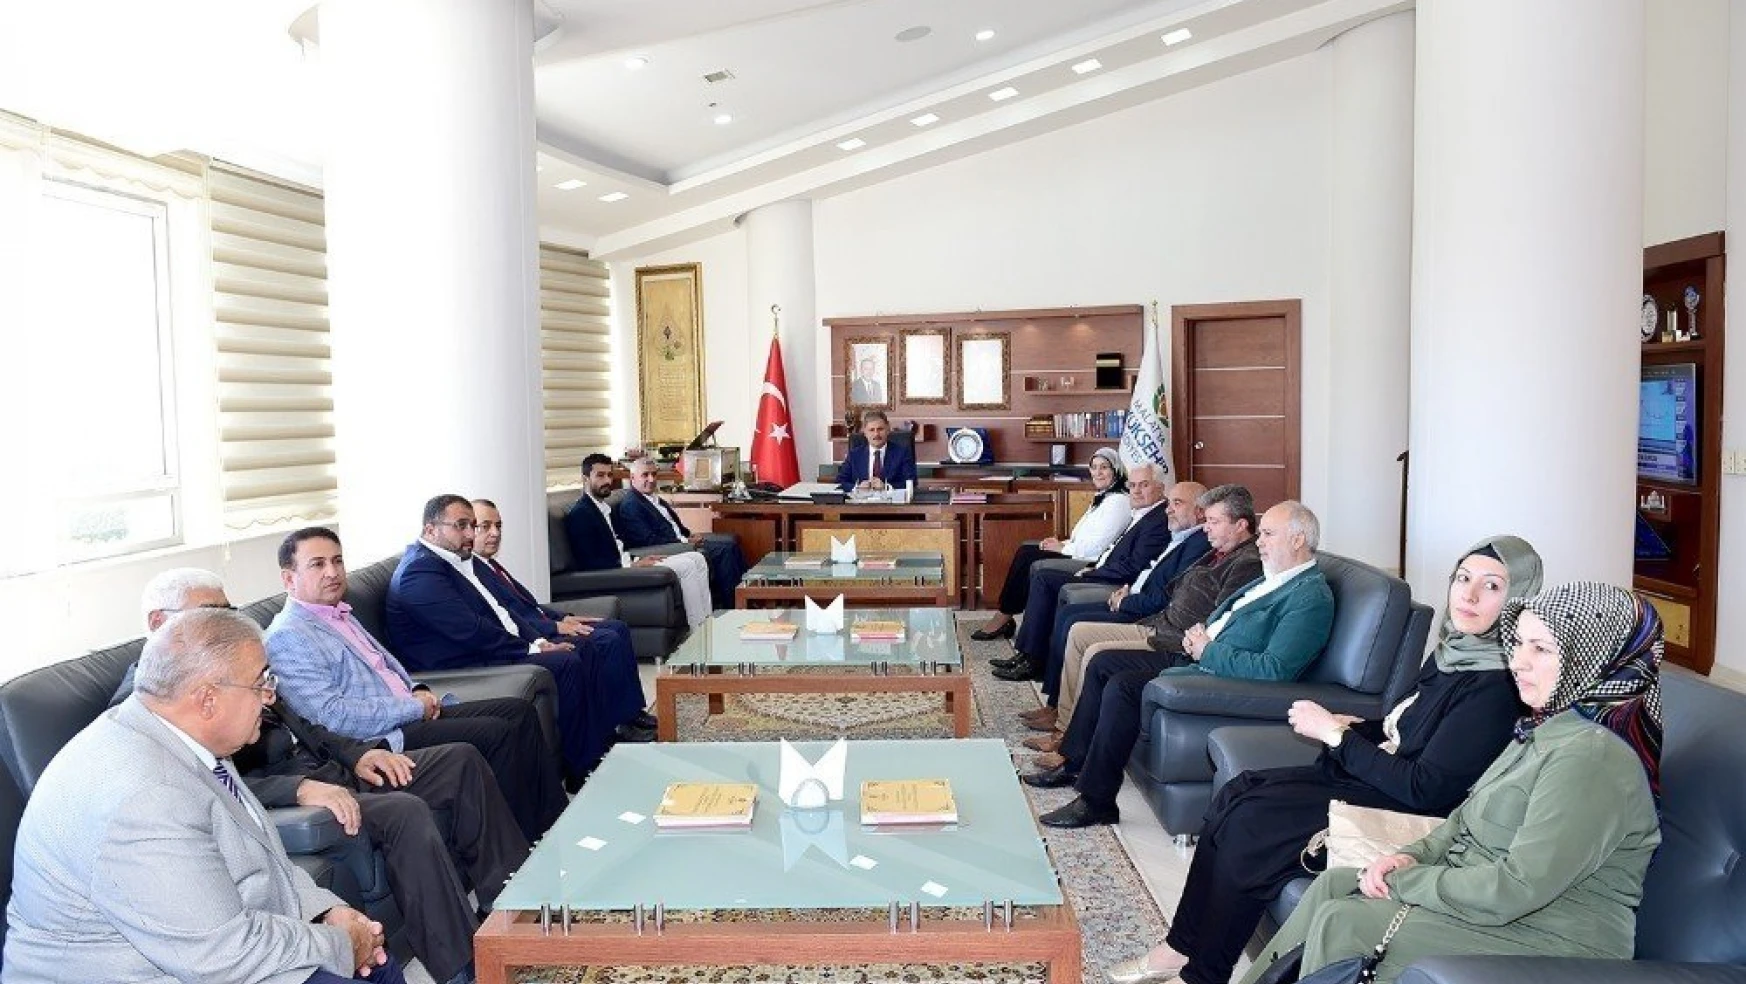 Büyükşehir Belediye Başkanı Ahmet Çakır: 'Malatya olarak örnek teşkilatlardan biriyiz'
